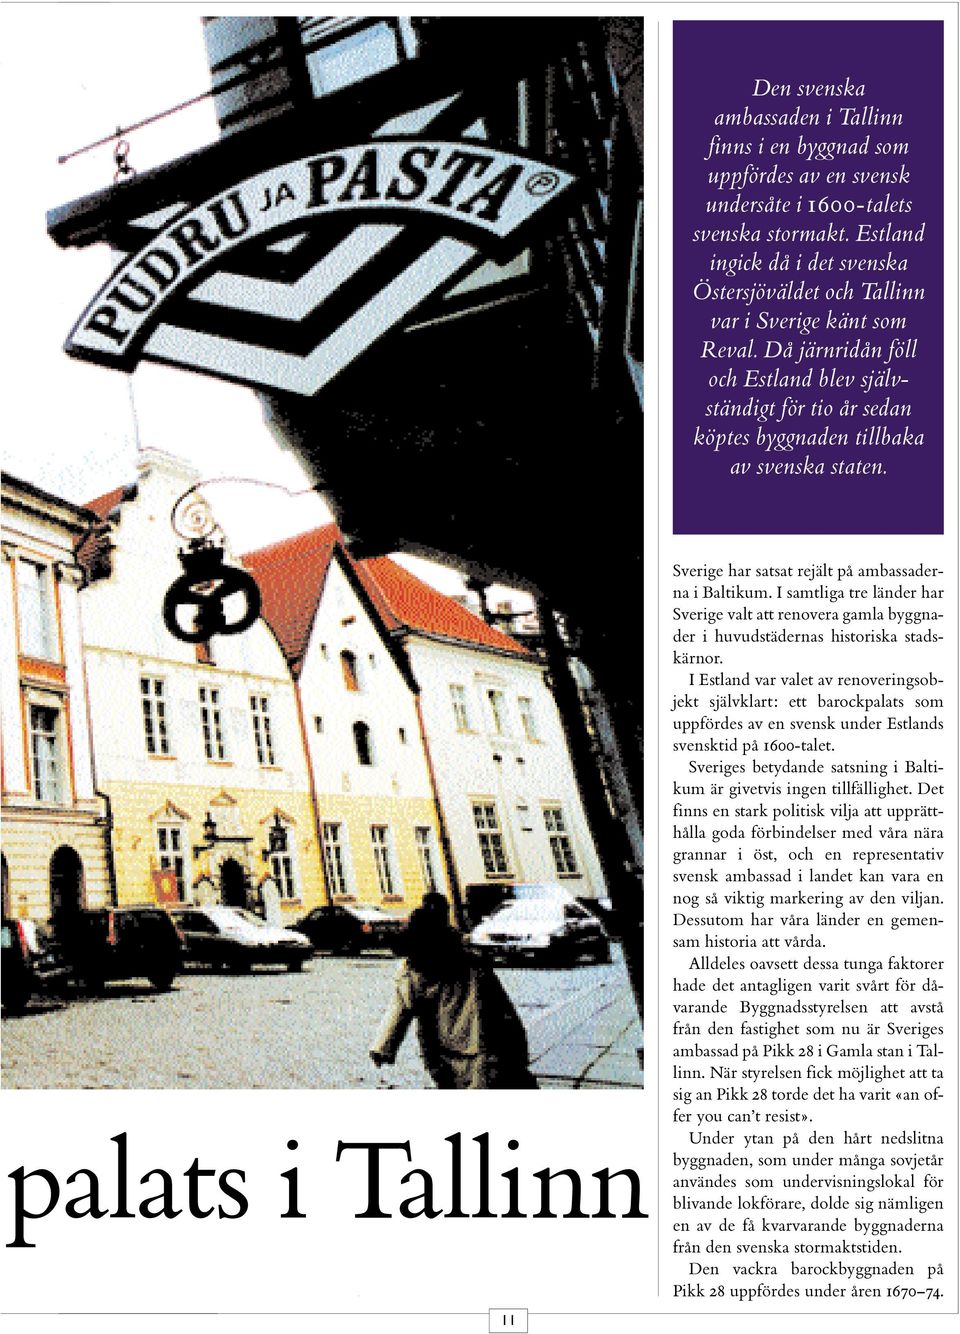 palats i Tallinn Sverige har satsat rejält på ambassaderna i Baltikum. I samtliga tre länder har Sverige valt att renovera gamla byggnader i huvudstädernas historiska stadskärnor.